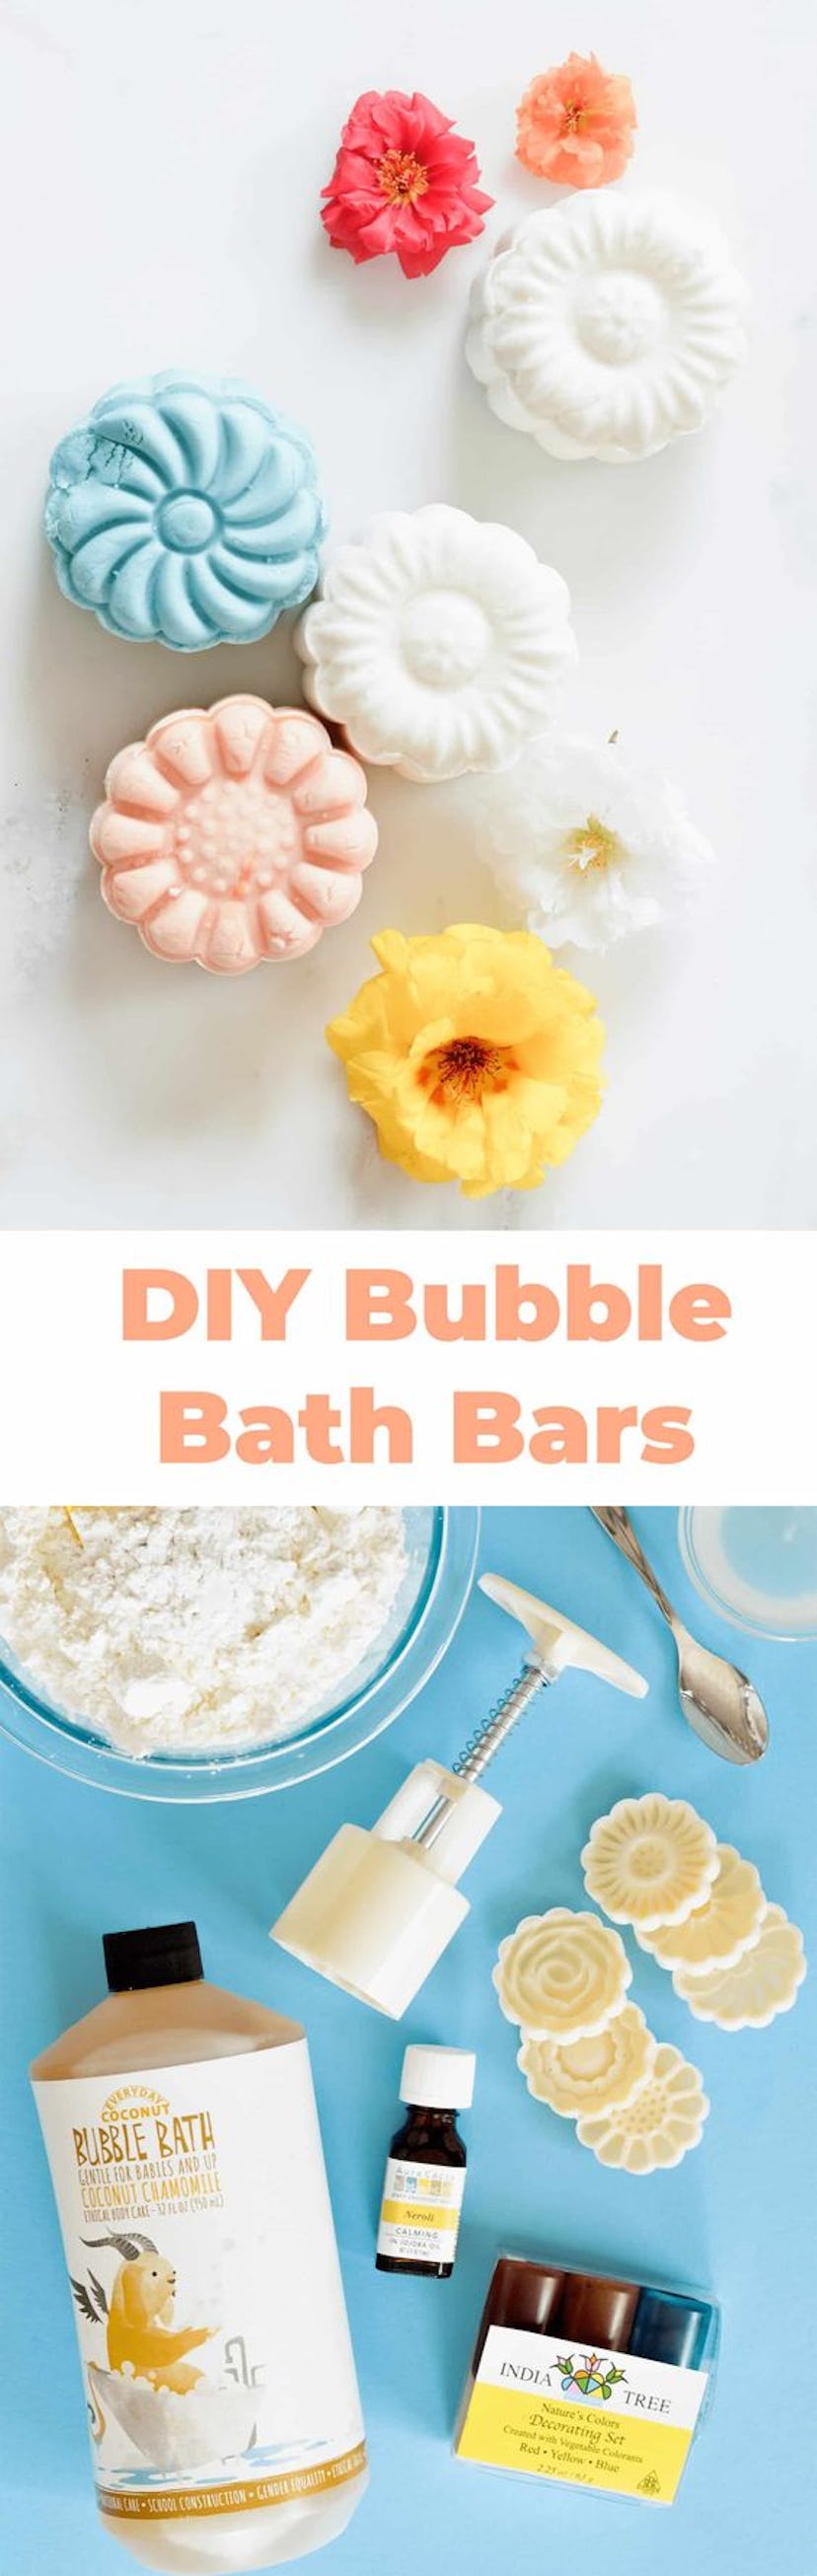 Bubble bath bars.